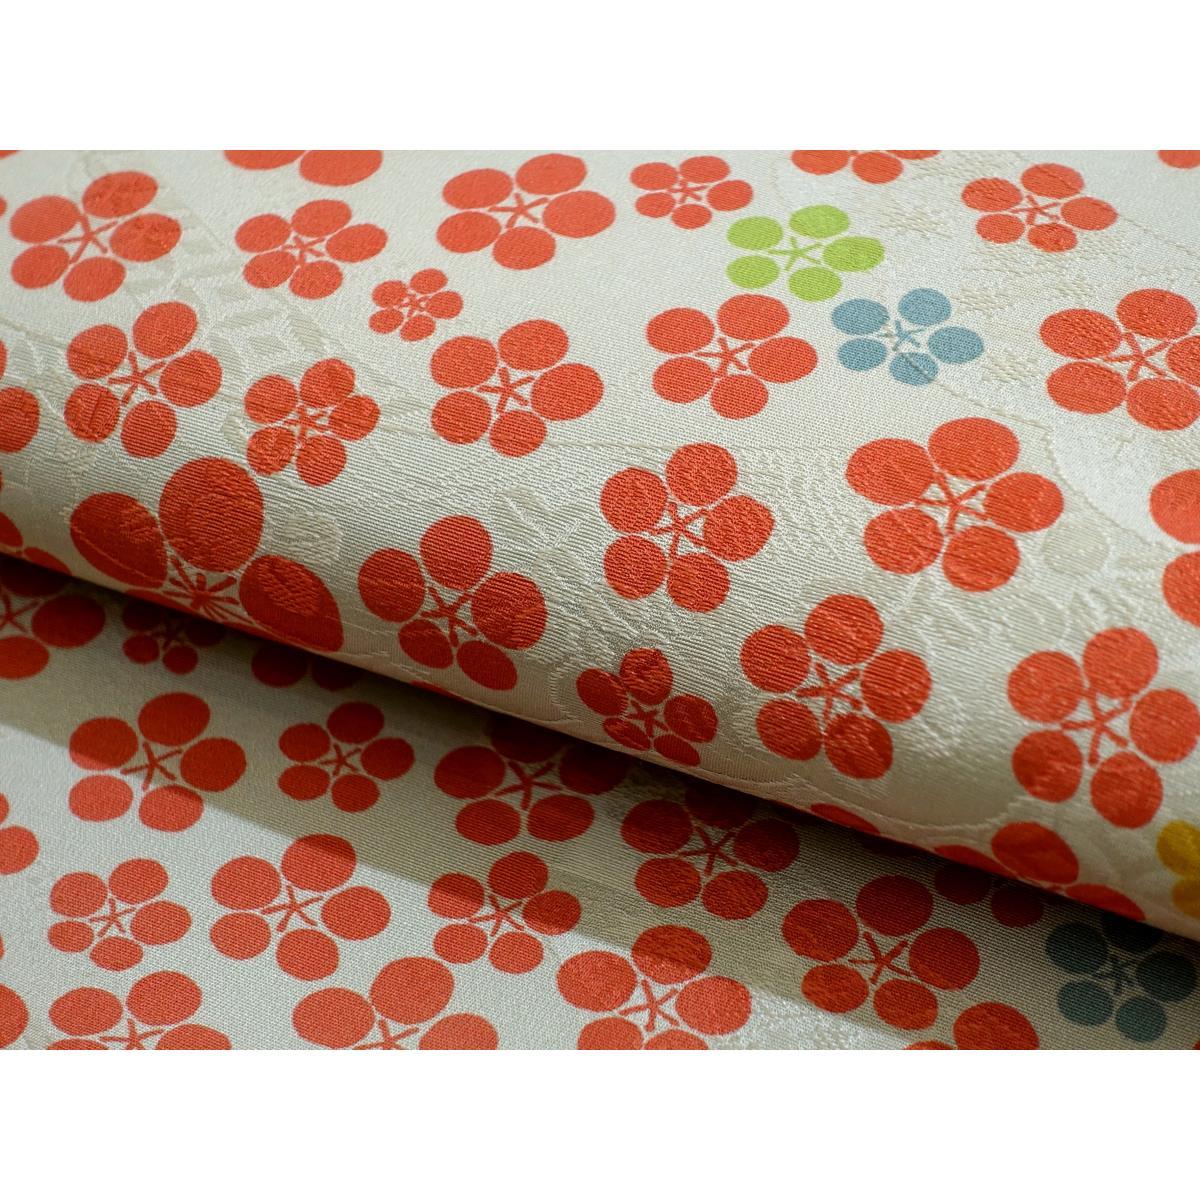 Nagoya obi dyed obi full pattern